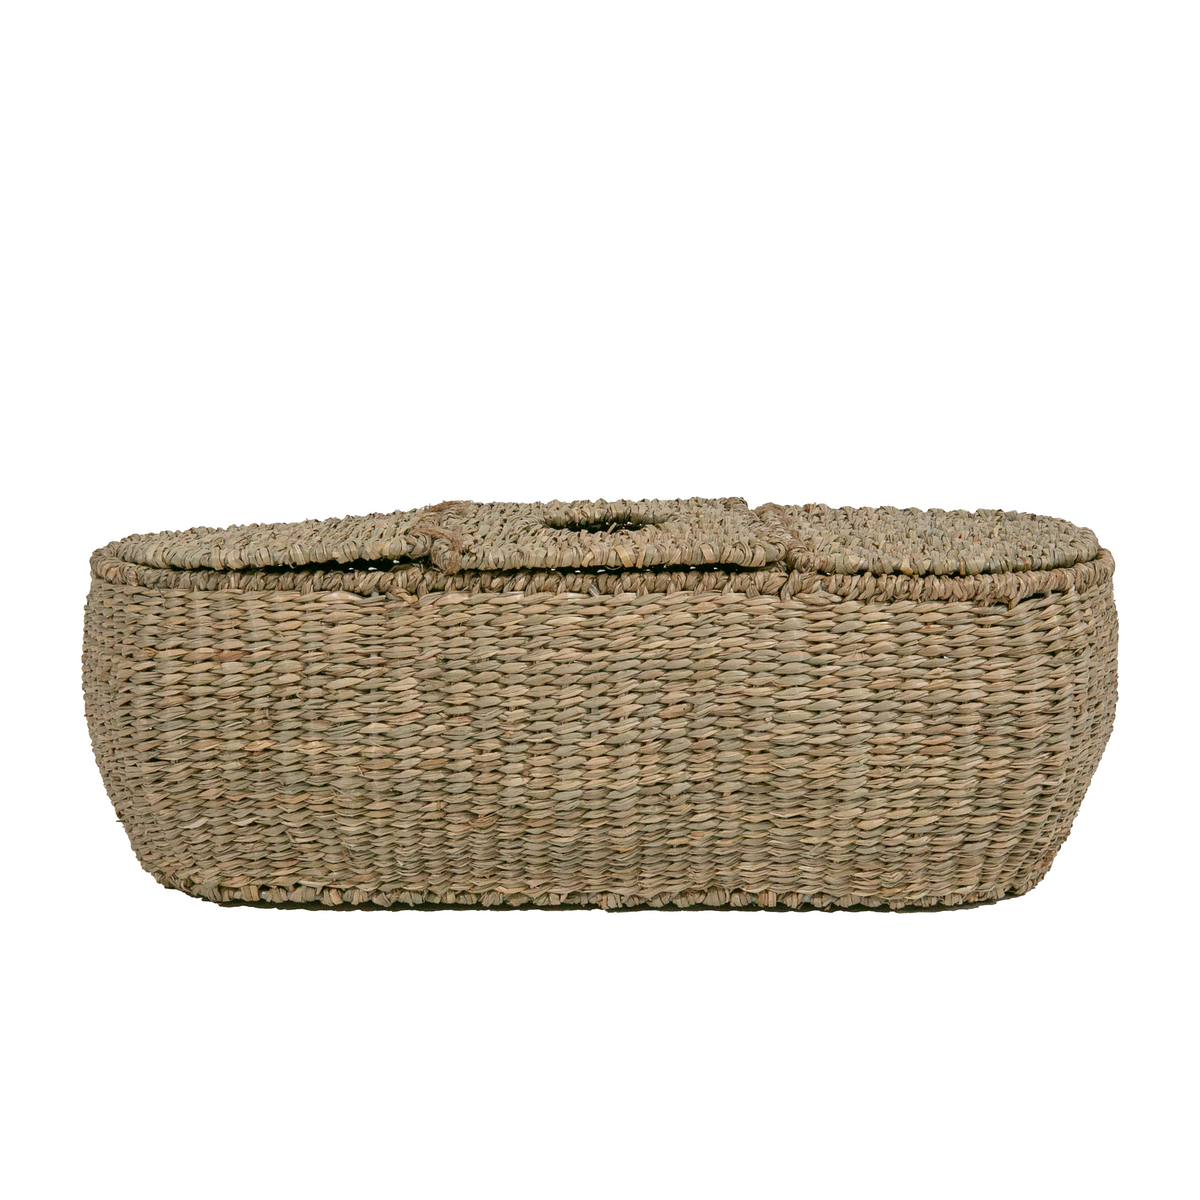 3 Part Tissue Basket in Seagrass